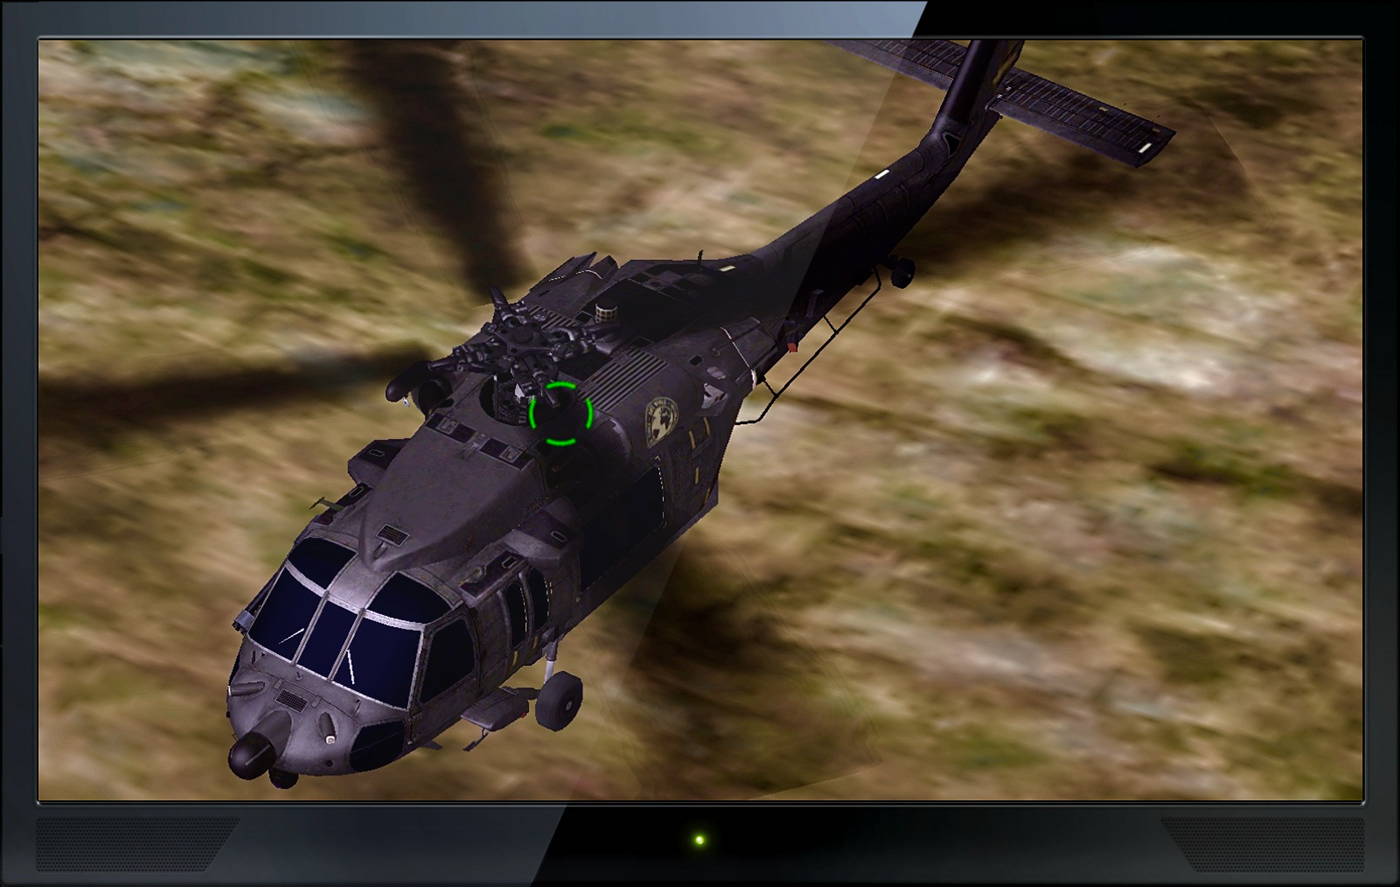 Flight Simulation Gaming